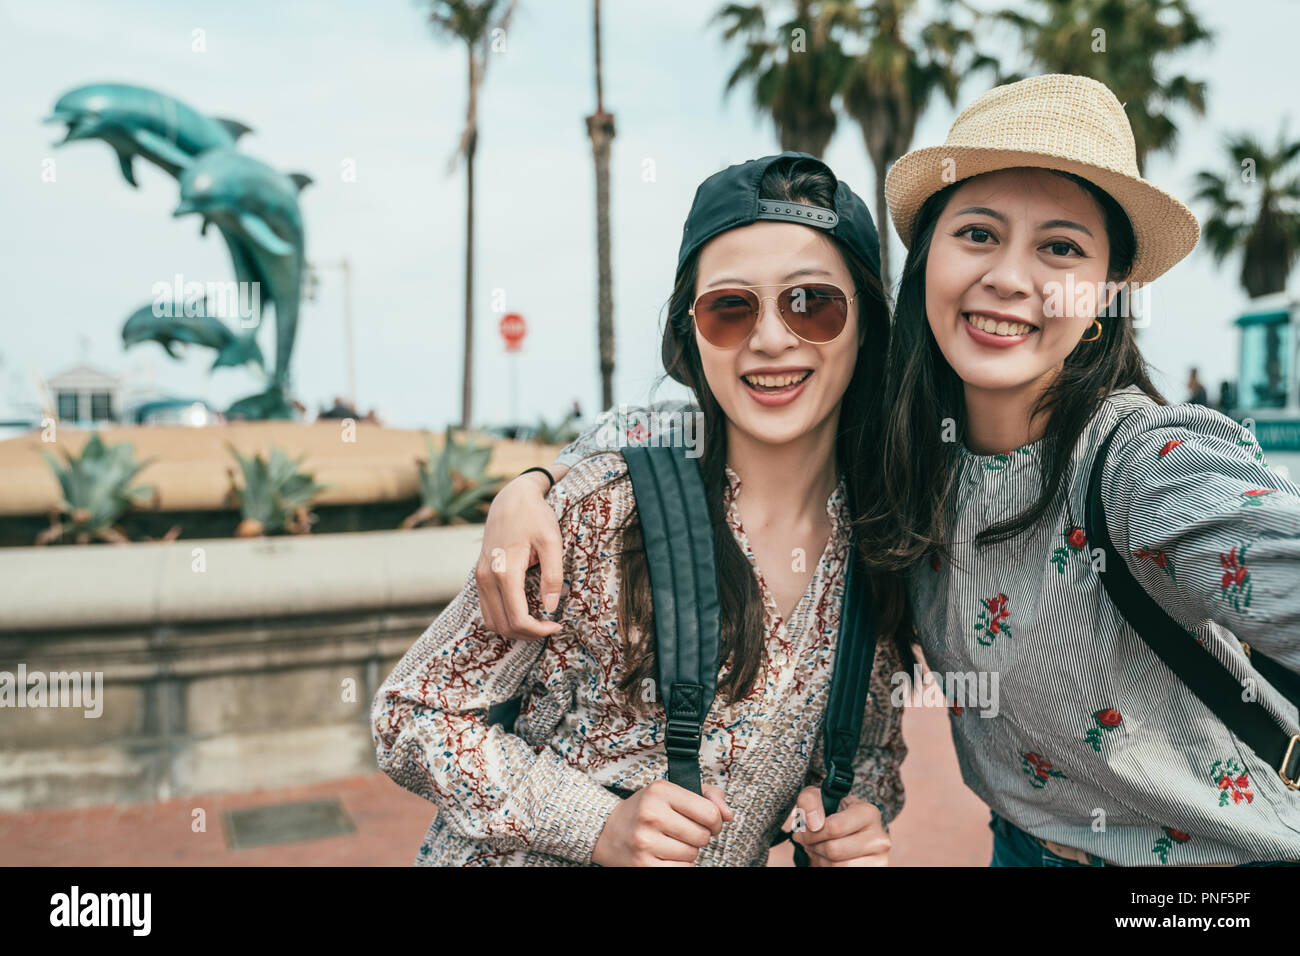 Zwei Frauen lächelnd und unter selfies glücklich vor einem Delphin Brunnen in einem schönen Plaza. Stockfoto